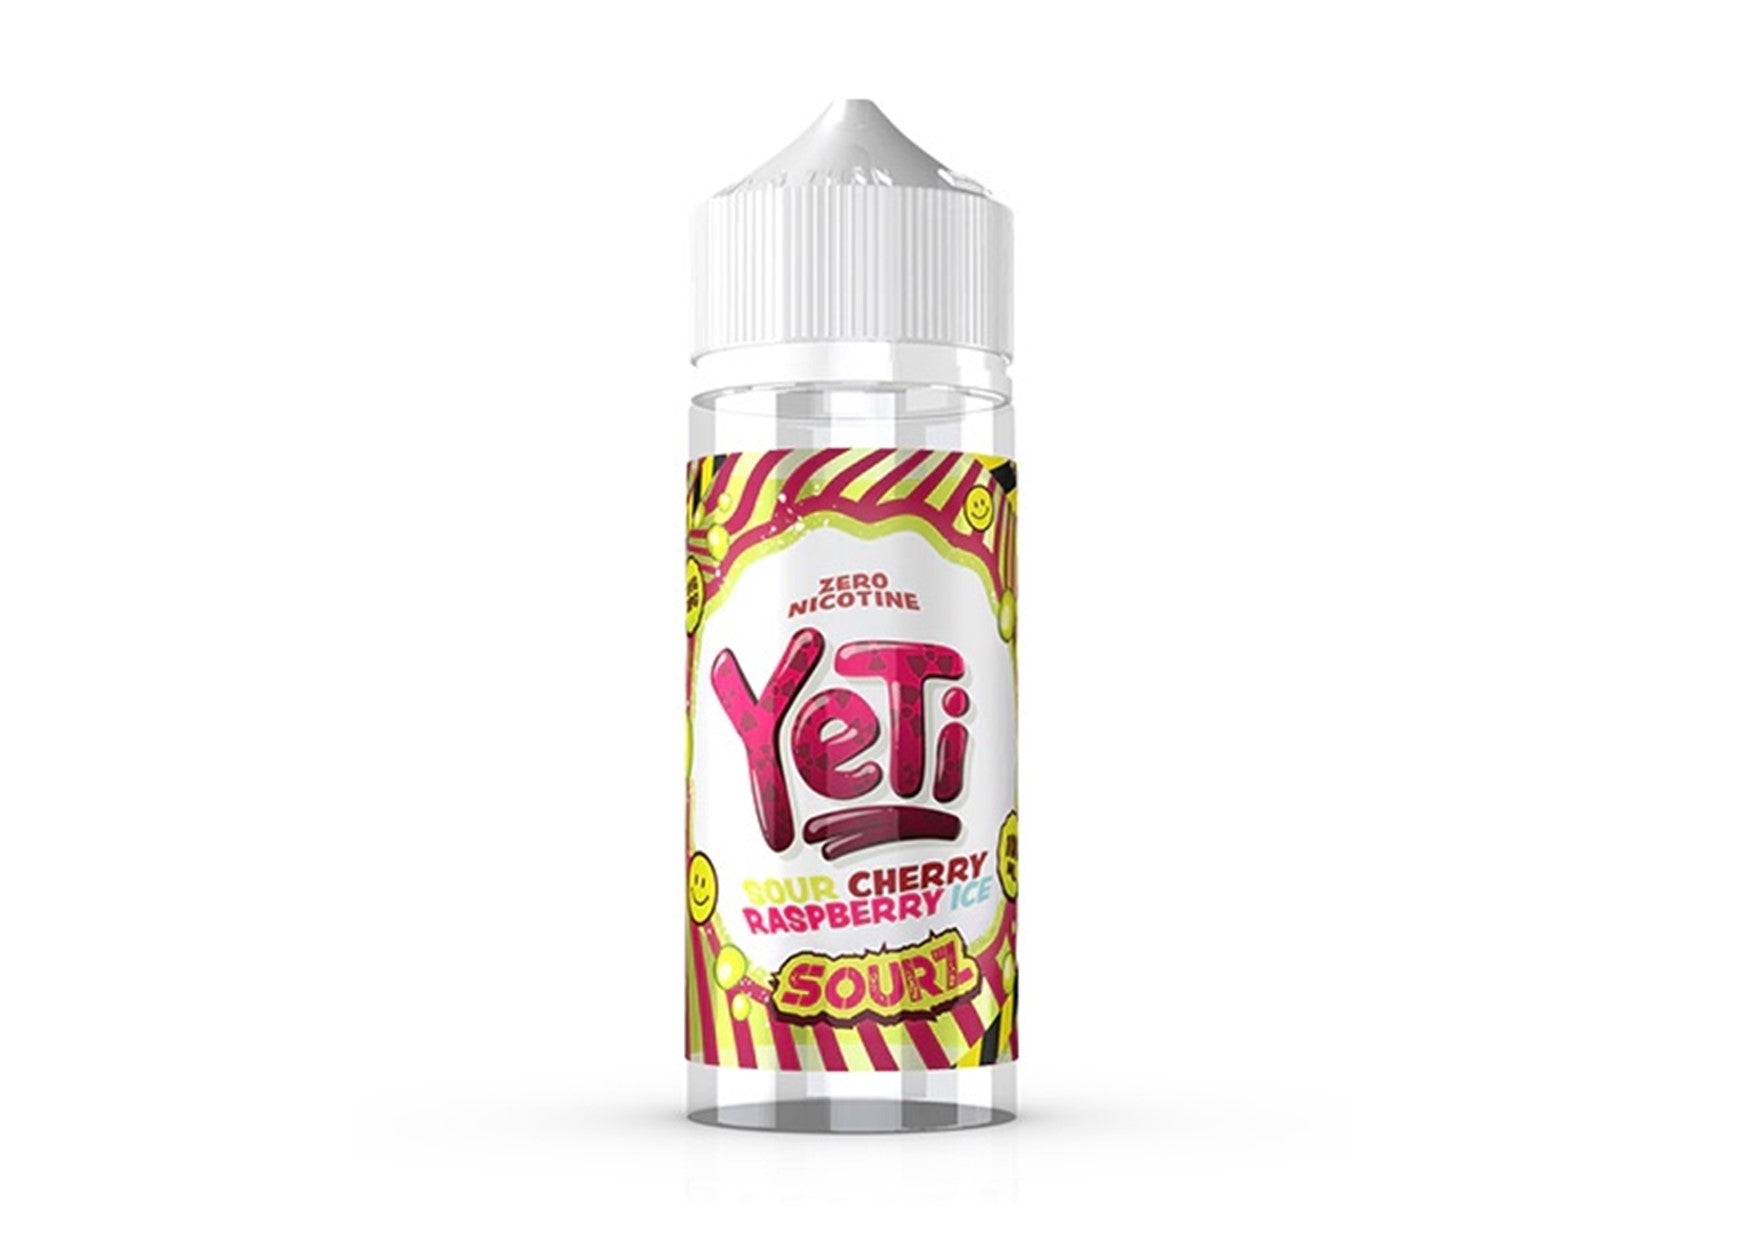 Yeti E-Liquid | Sourz | Sour Cherry Raspberry ICE